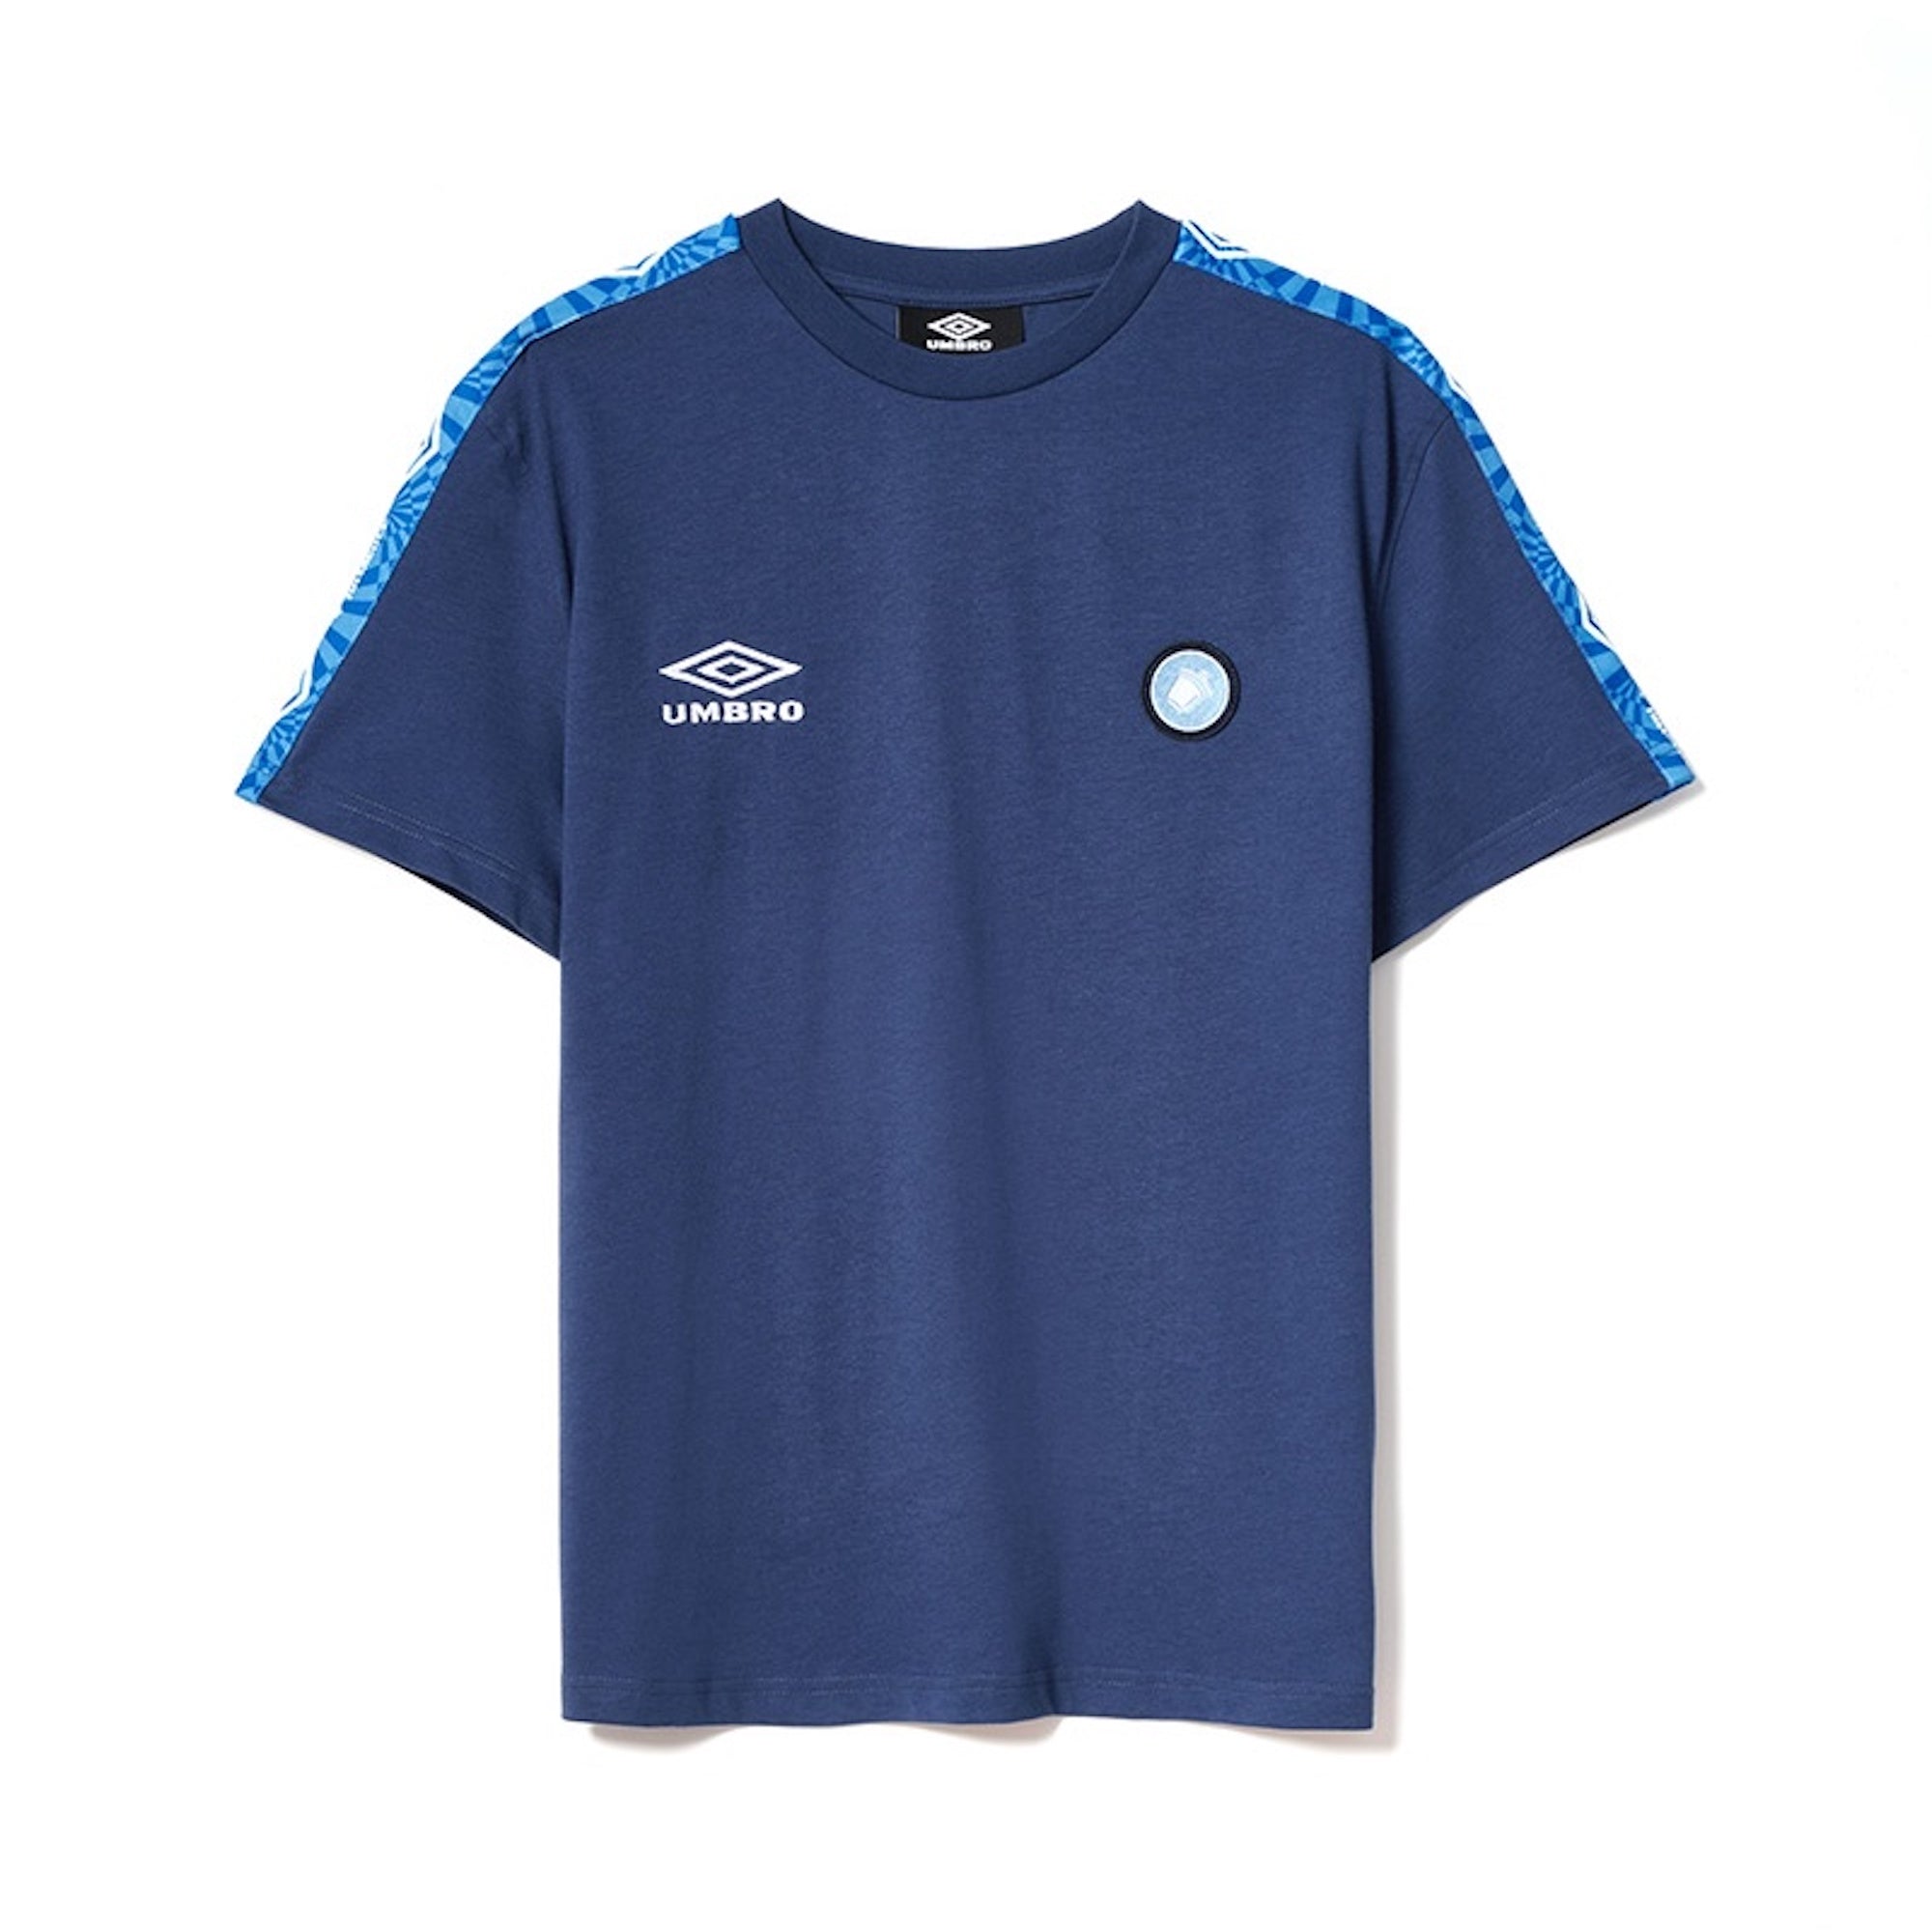 Umbro ×acchettee Napoli Tシャツ - UNISEX - ブルー